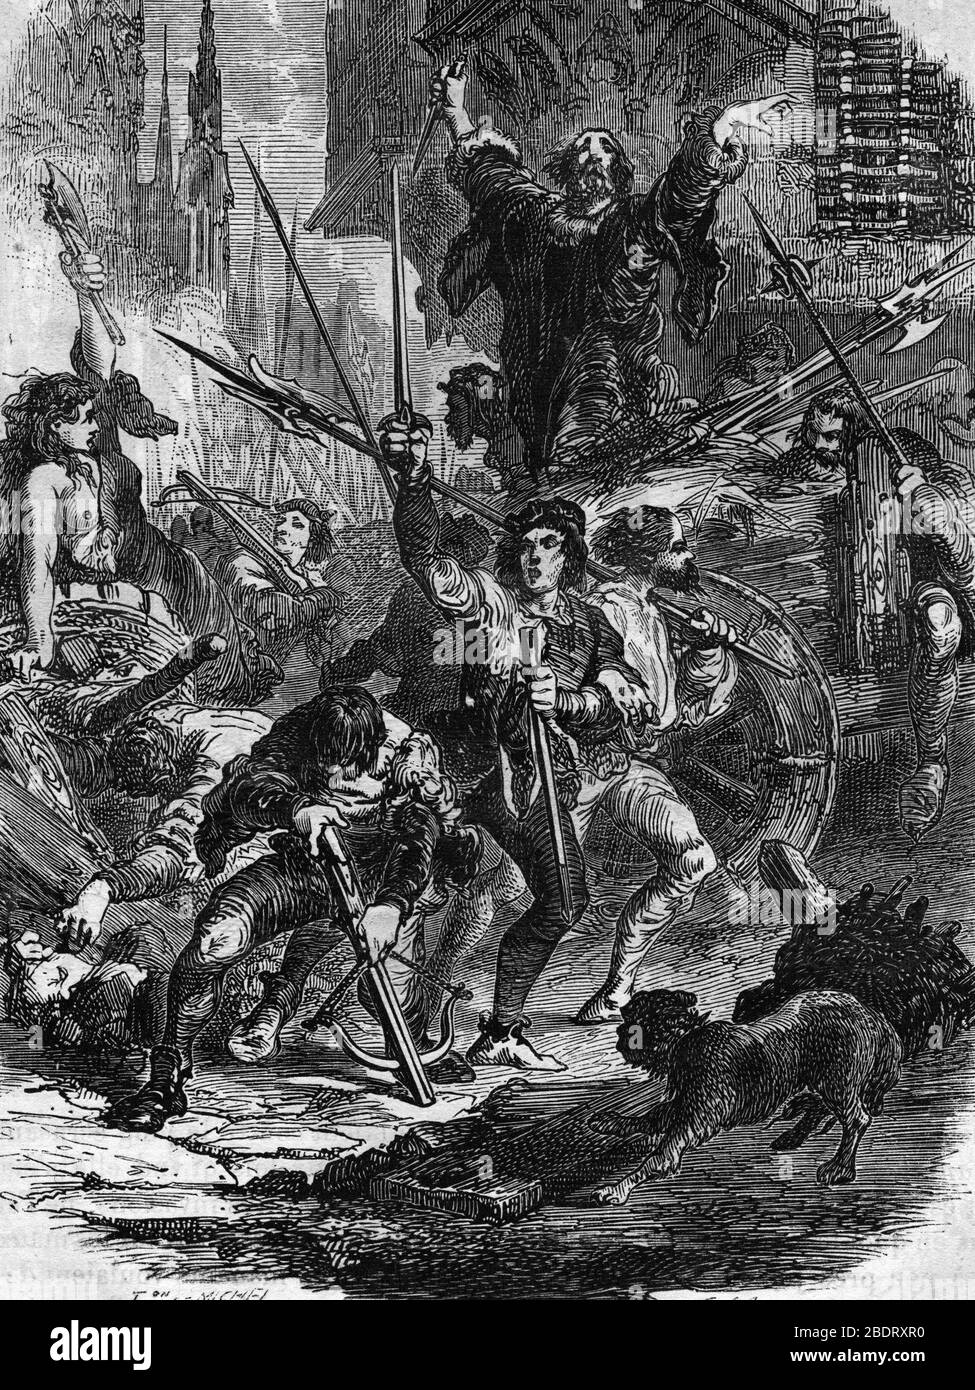 La revolte de Montpellier : soulevement des habitants contre les impots et l'oppression fiscale en 1379 et 1380 sous le regne de Charles VI - Assassin Stock Photo